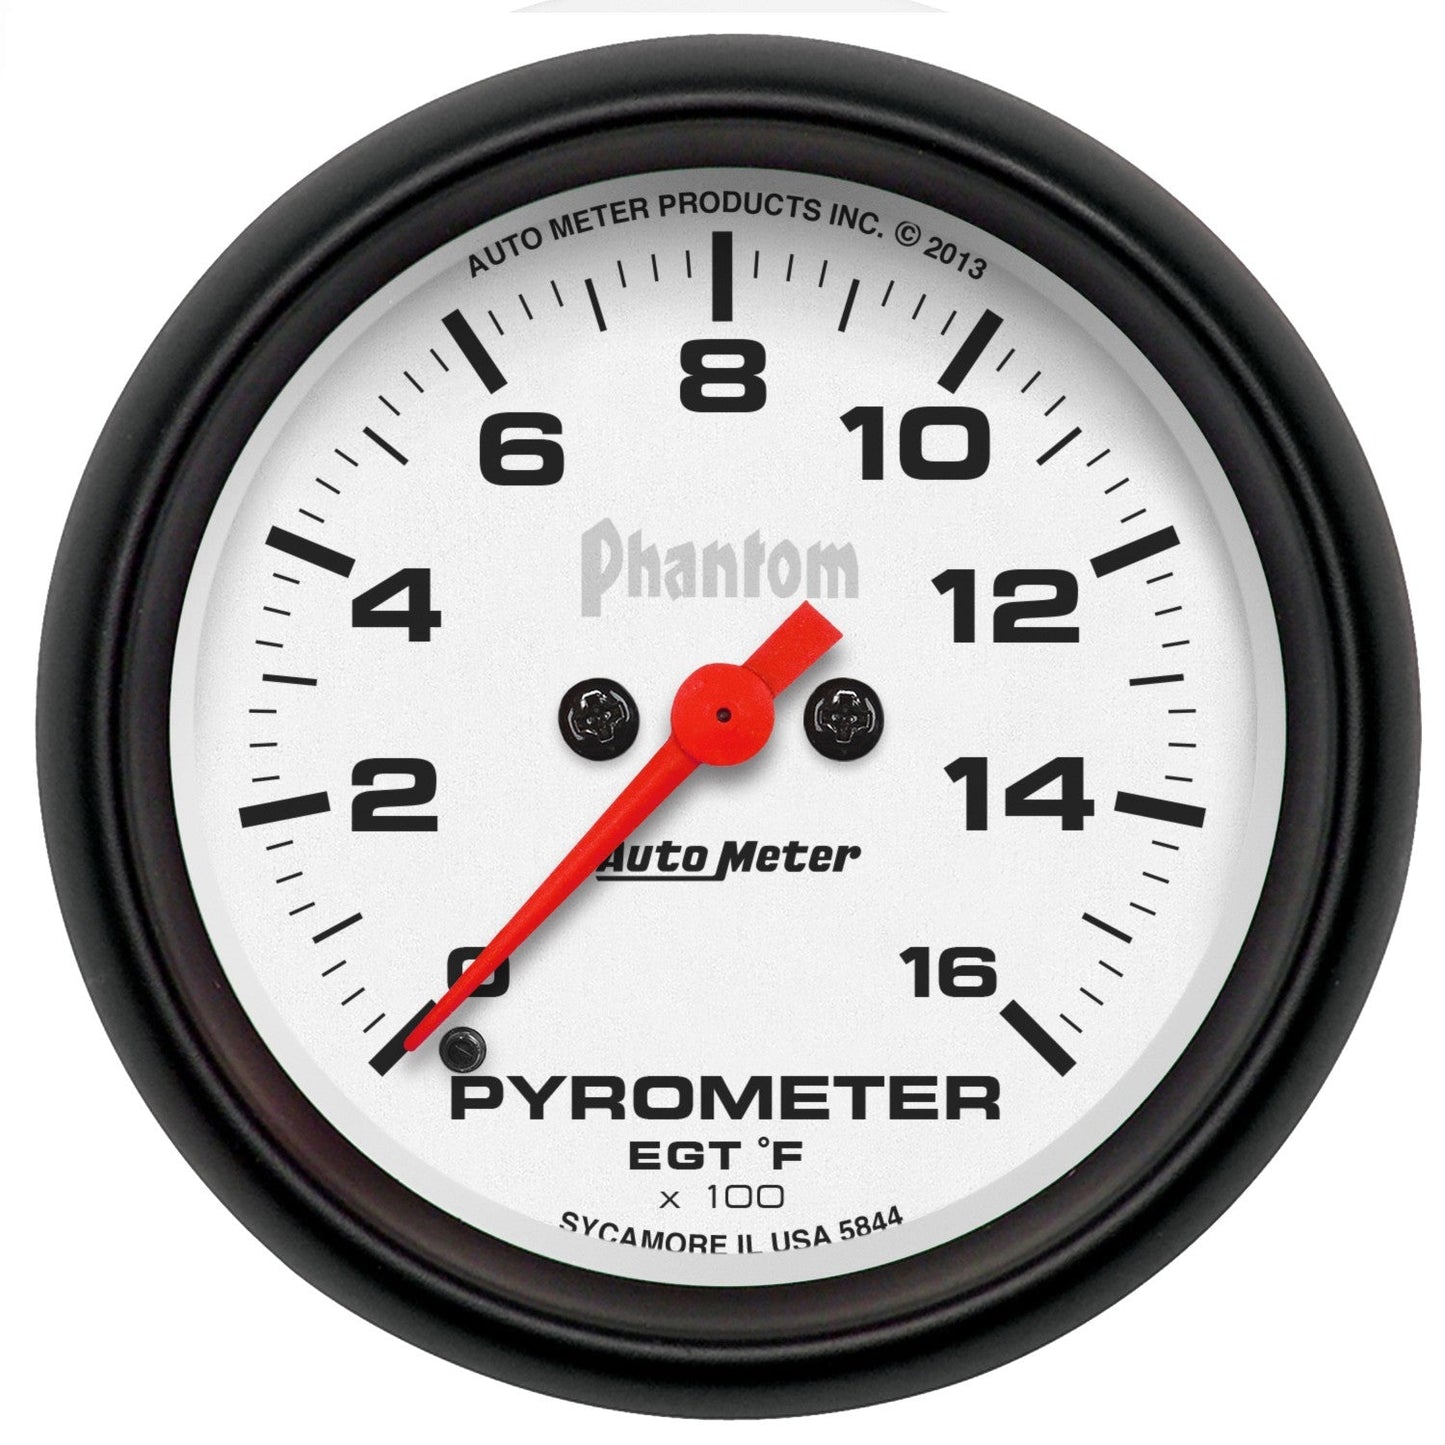 AutoMeter - 2-5/8" PYROMETER, 0-1600 °F, STEPPER MOTOR, PHANTOM (5844)